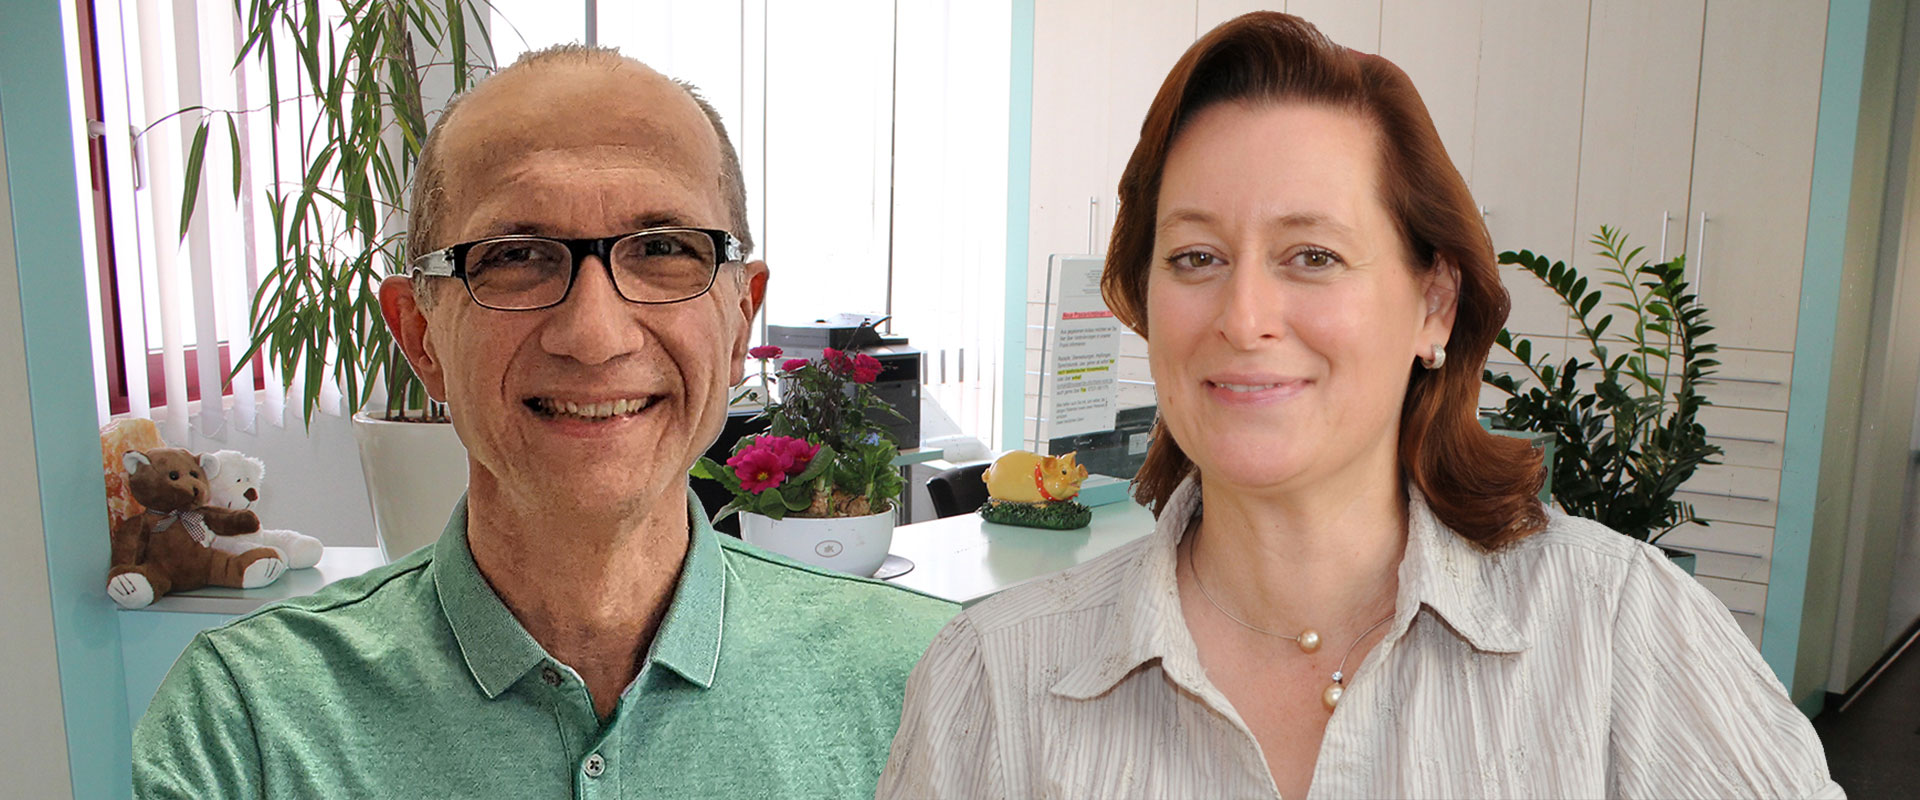 Unsere Ärzte Dr. med. Christoph Müller & Ines Löffler